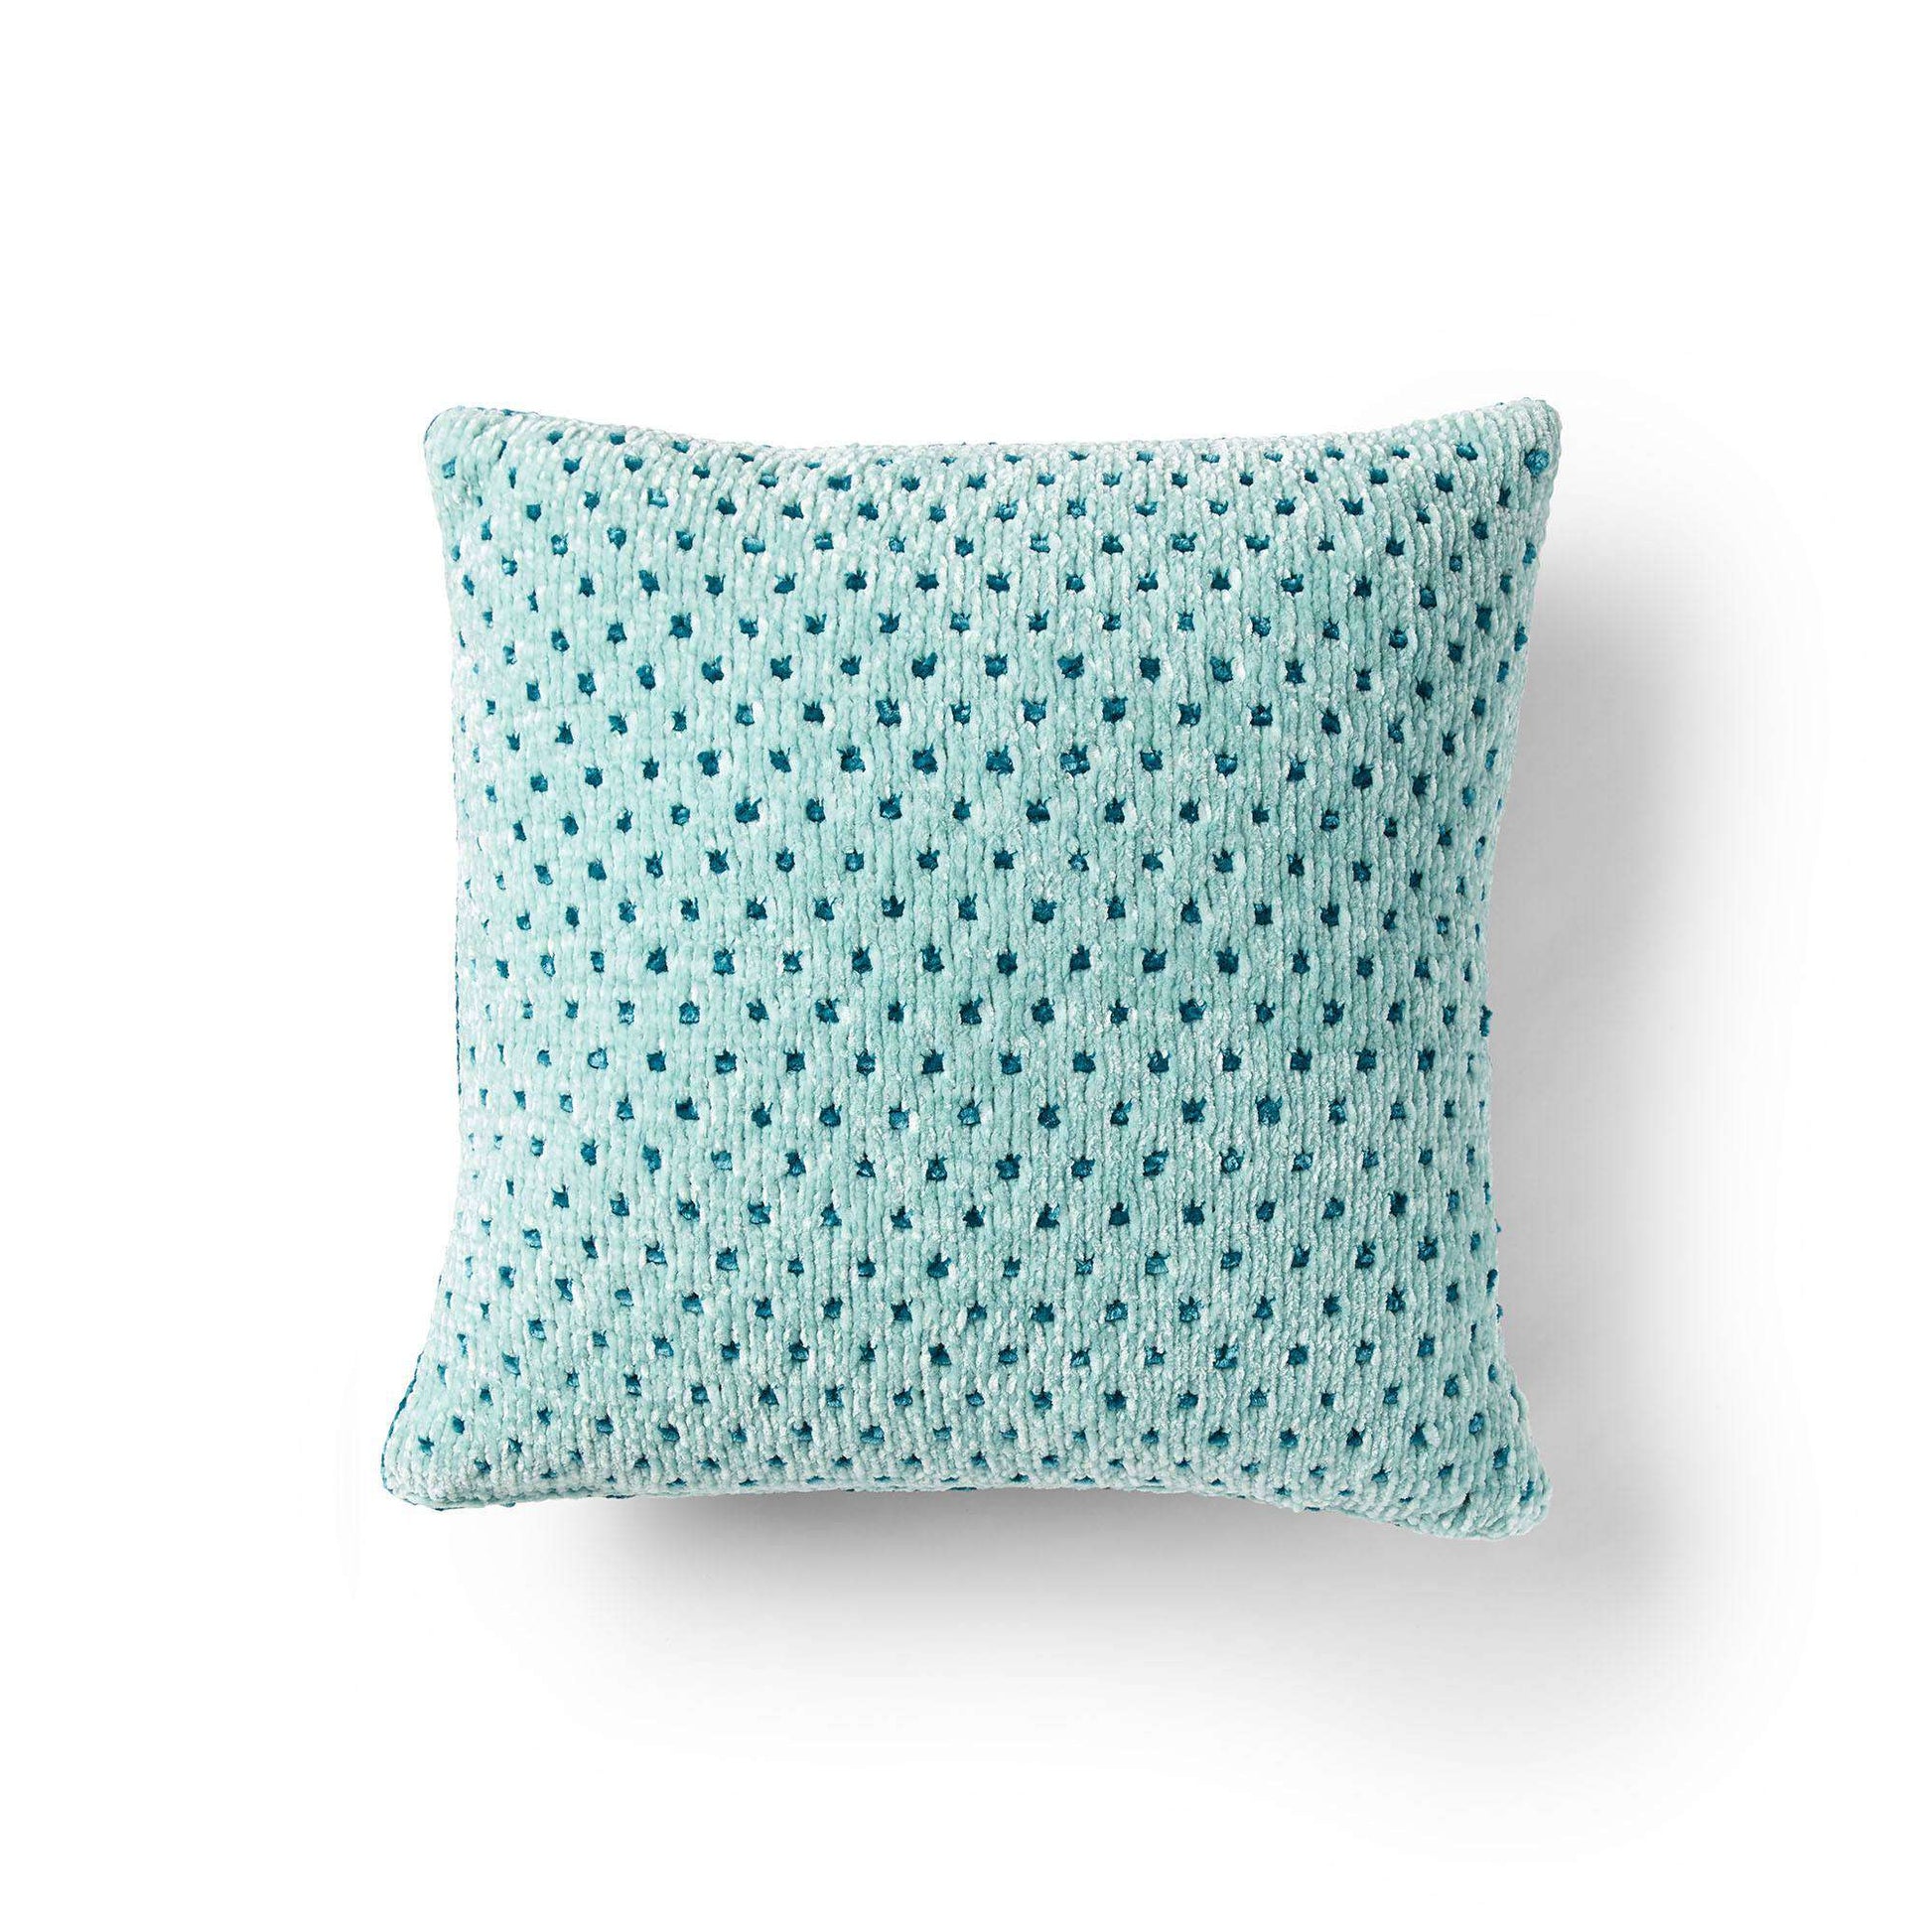 Free Bernat Pretty Polka-Dot Knit Pillow Pattern